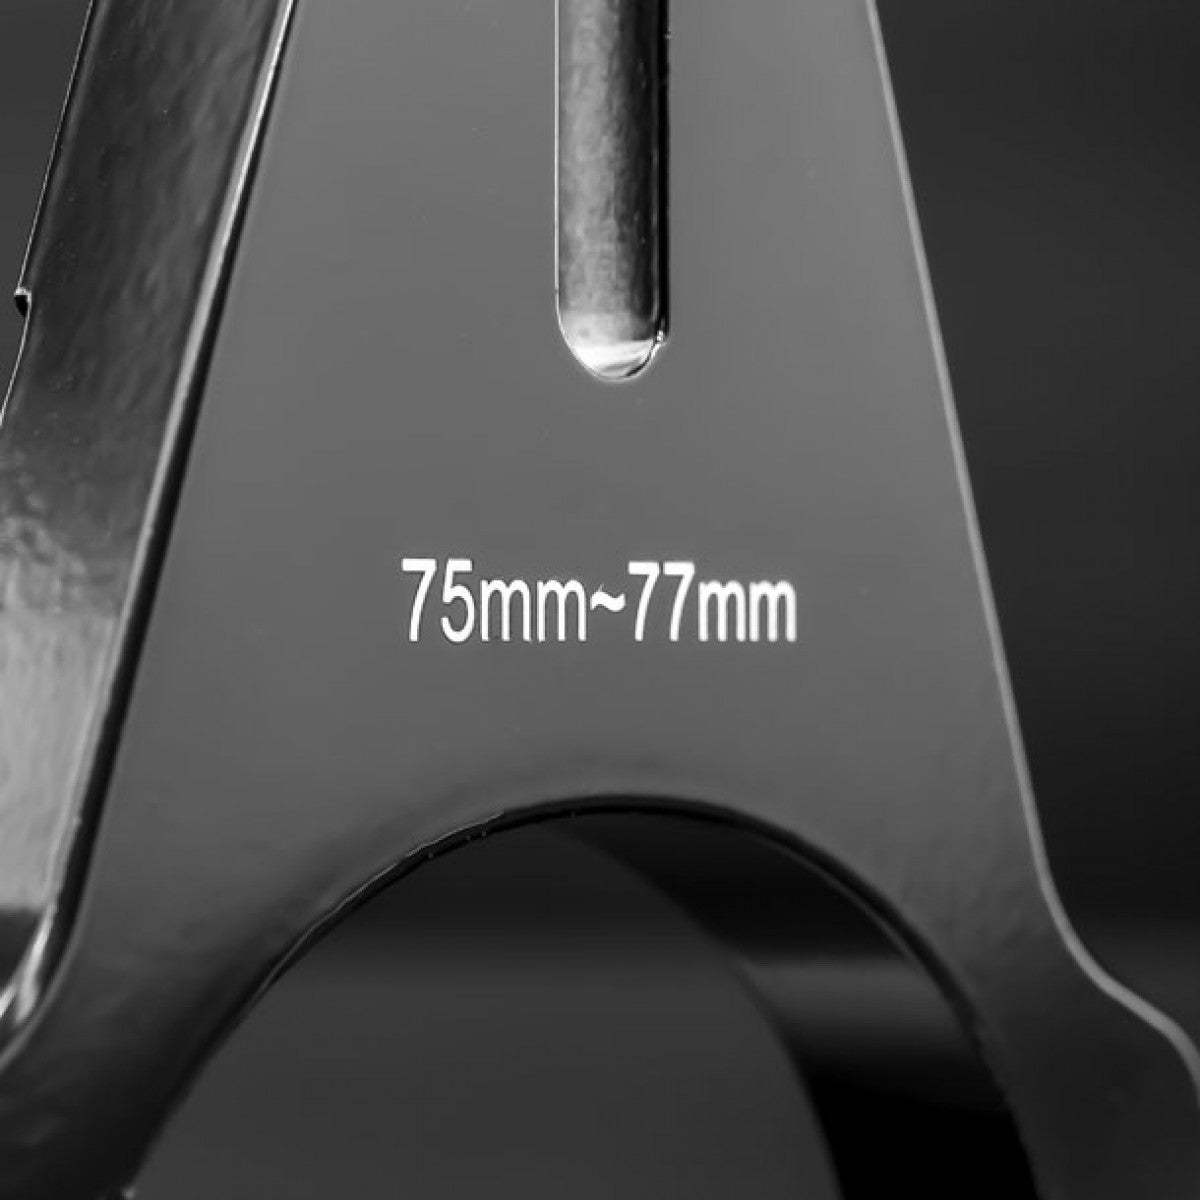 STEDI VICE CLAMP Rohrklemme Montagehalterungen  | Schwarz